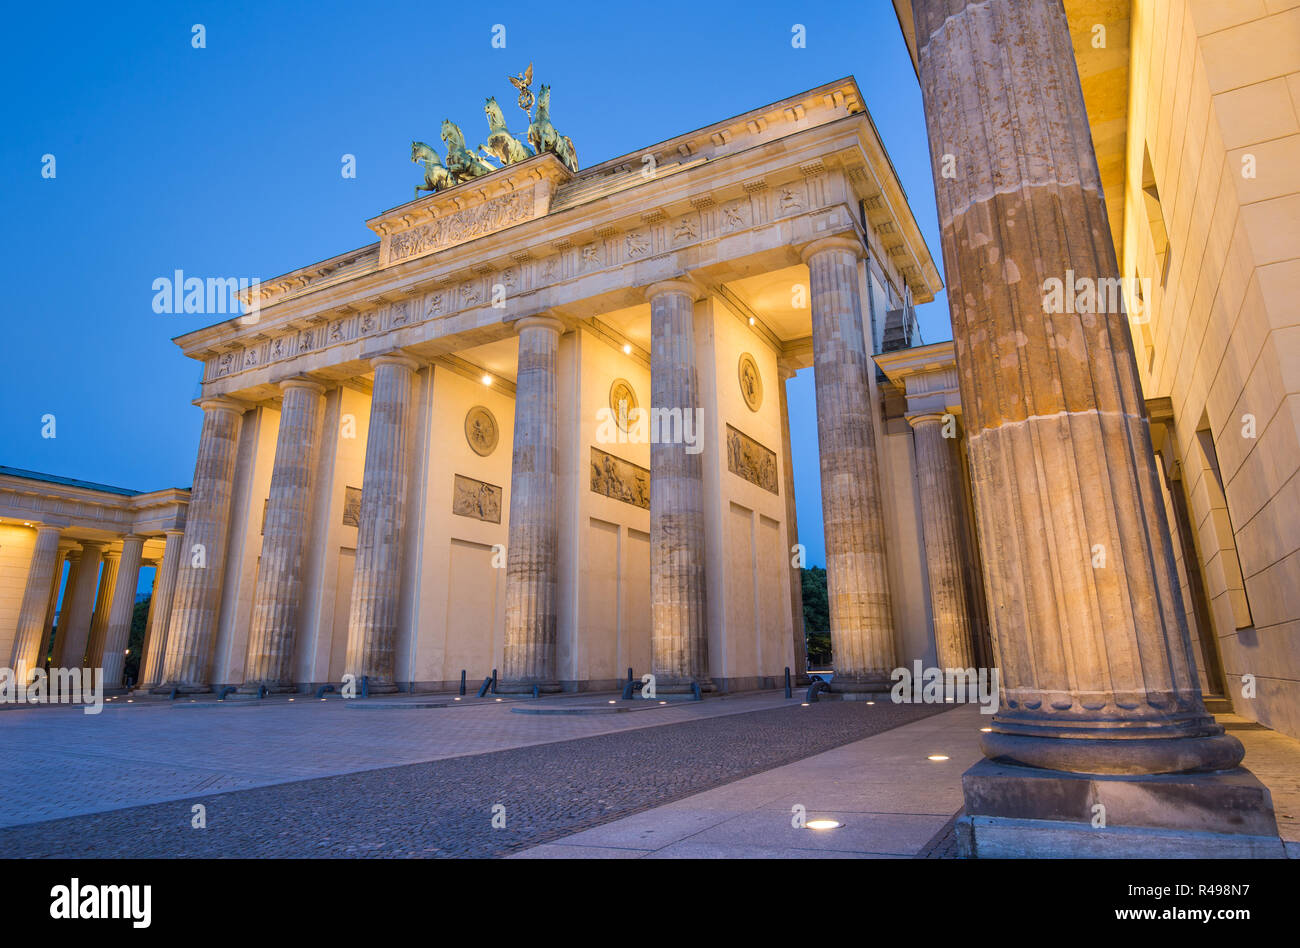 Vista panoramica del famoso Brandenburger Tor (Porta di Brandeburgo), uno dei più noti monumenti e simboli nazionali della Germania, in penombra durante il blu Foto Stock